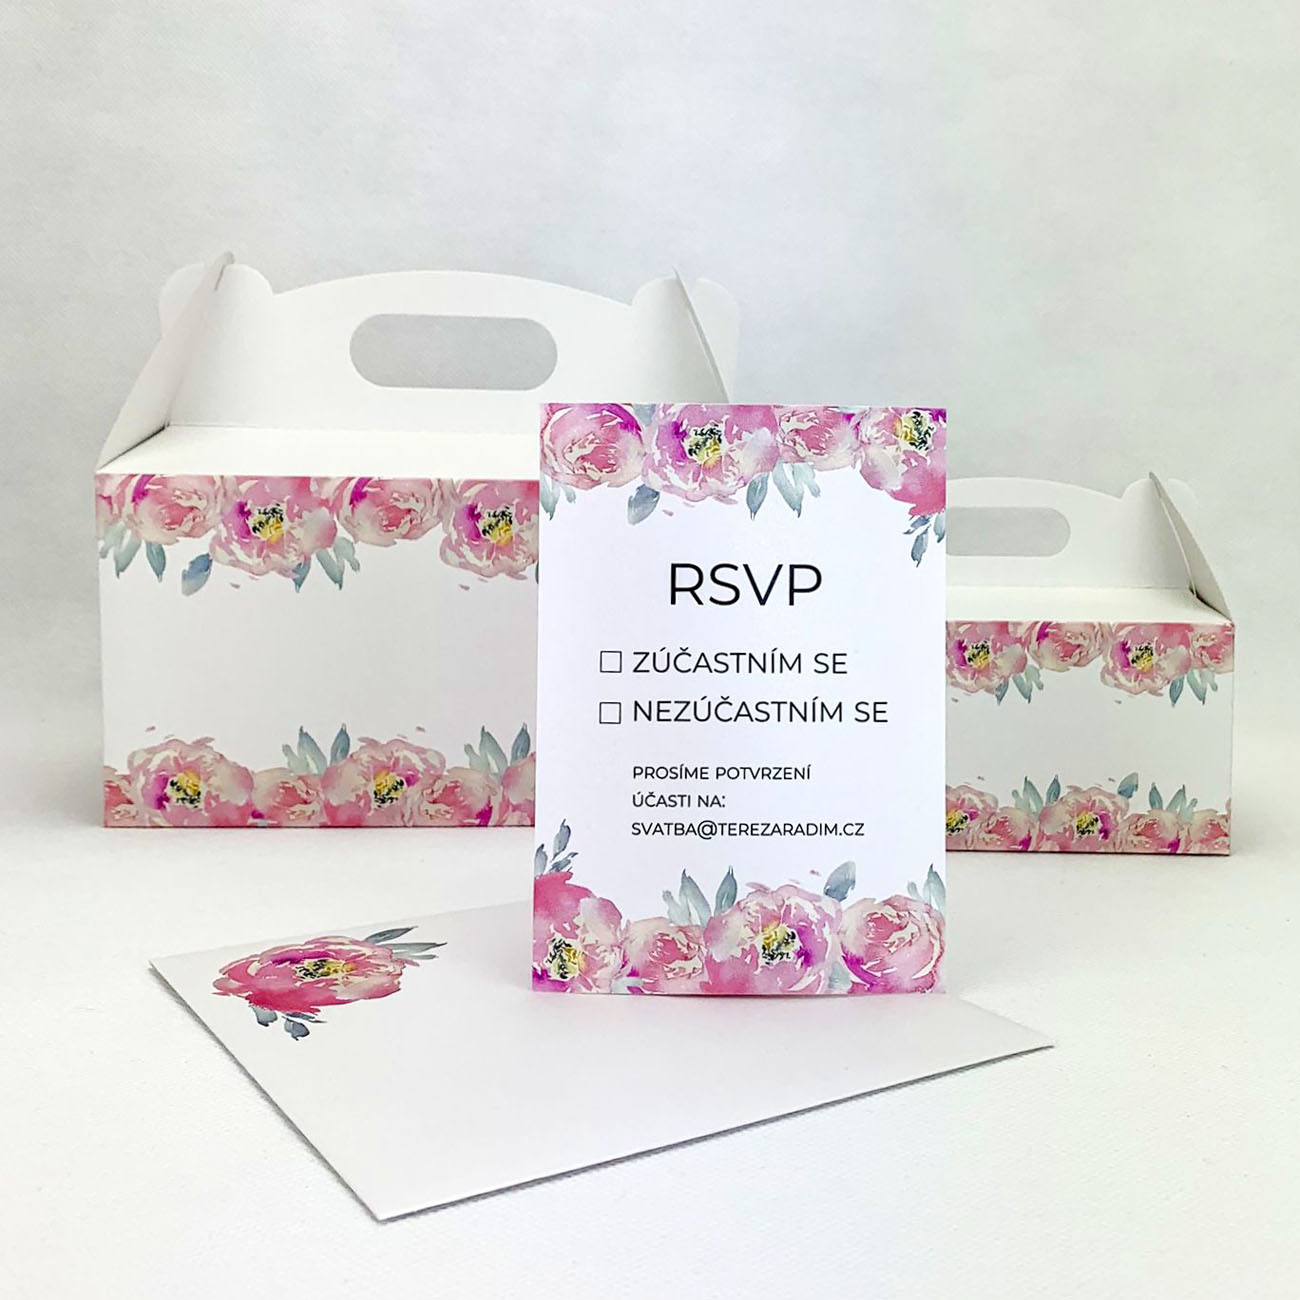 Svatební kartička s květy pivoněk - RS4002